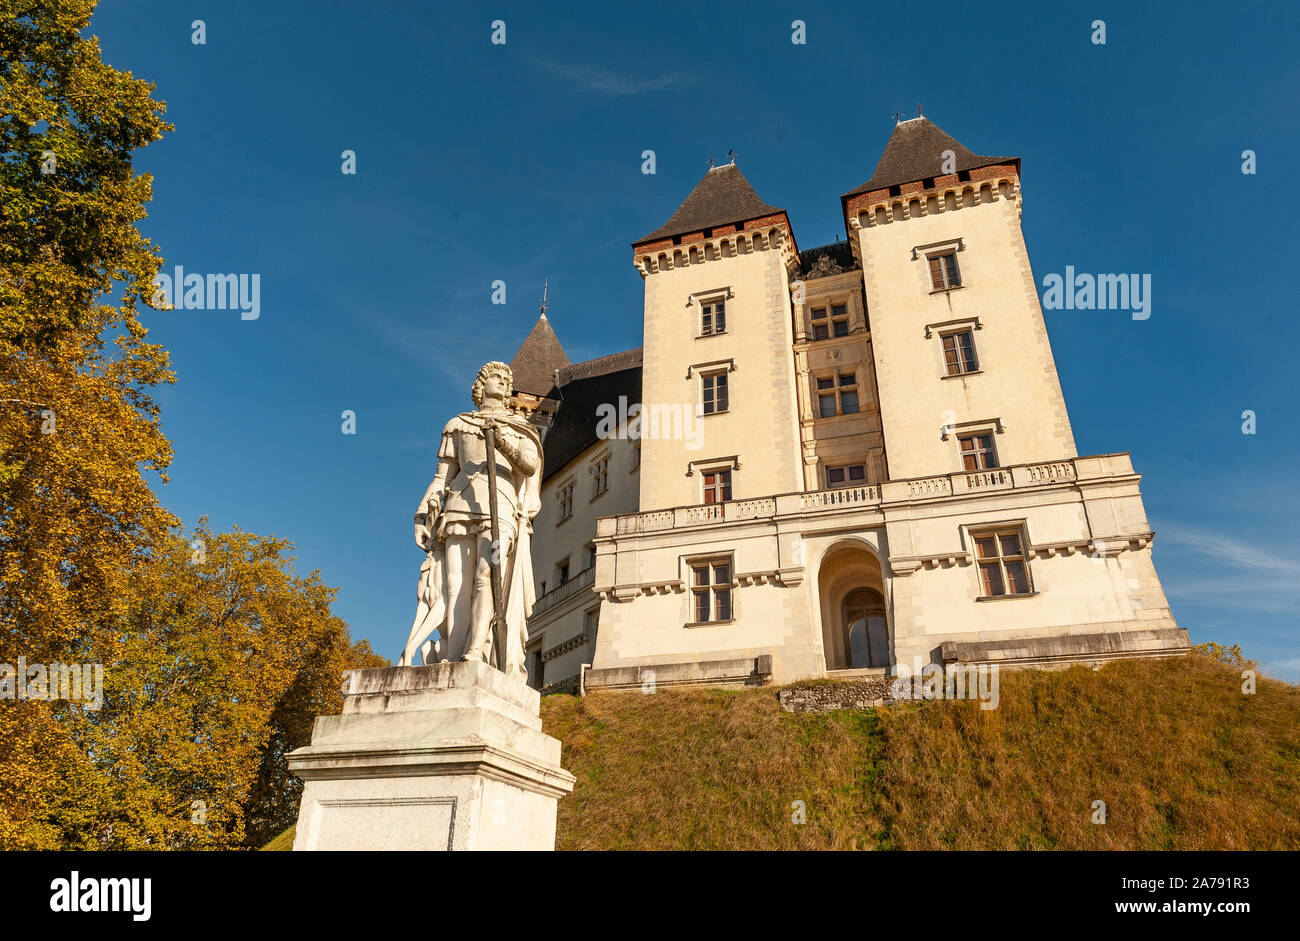 Das Schloss von Pau mit der Statue von Gaston Fébus, Frankreich Stockfoto